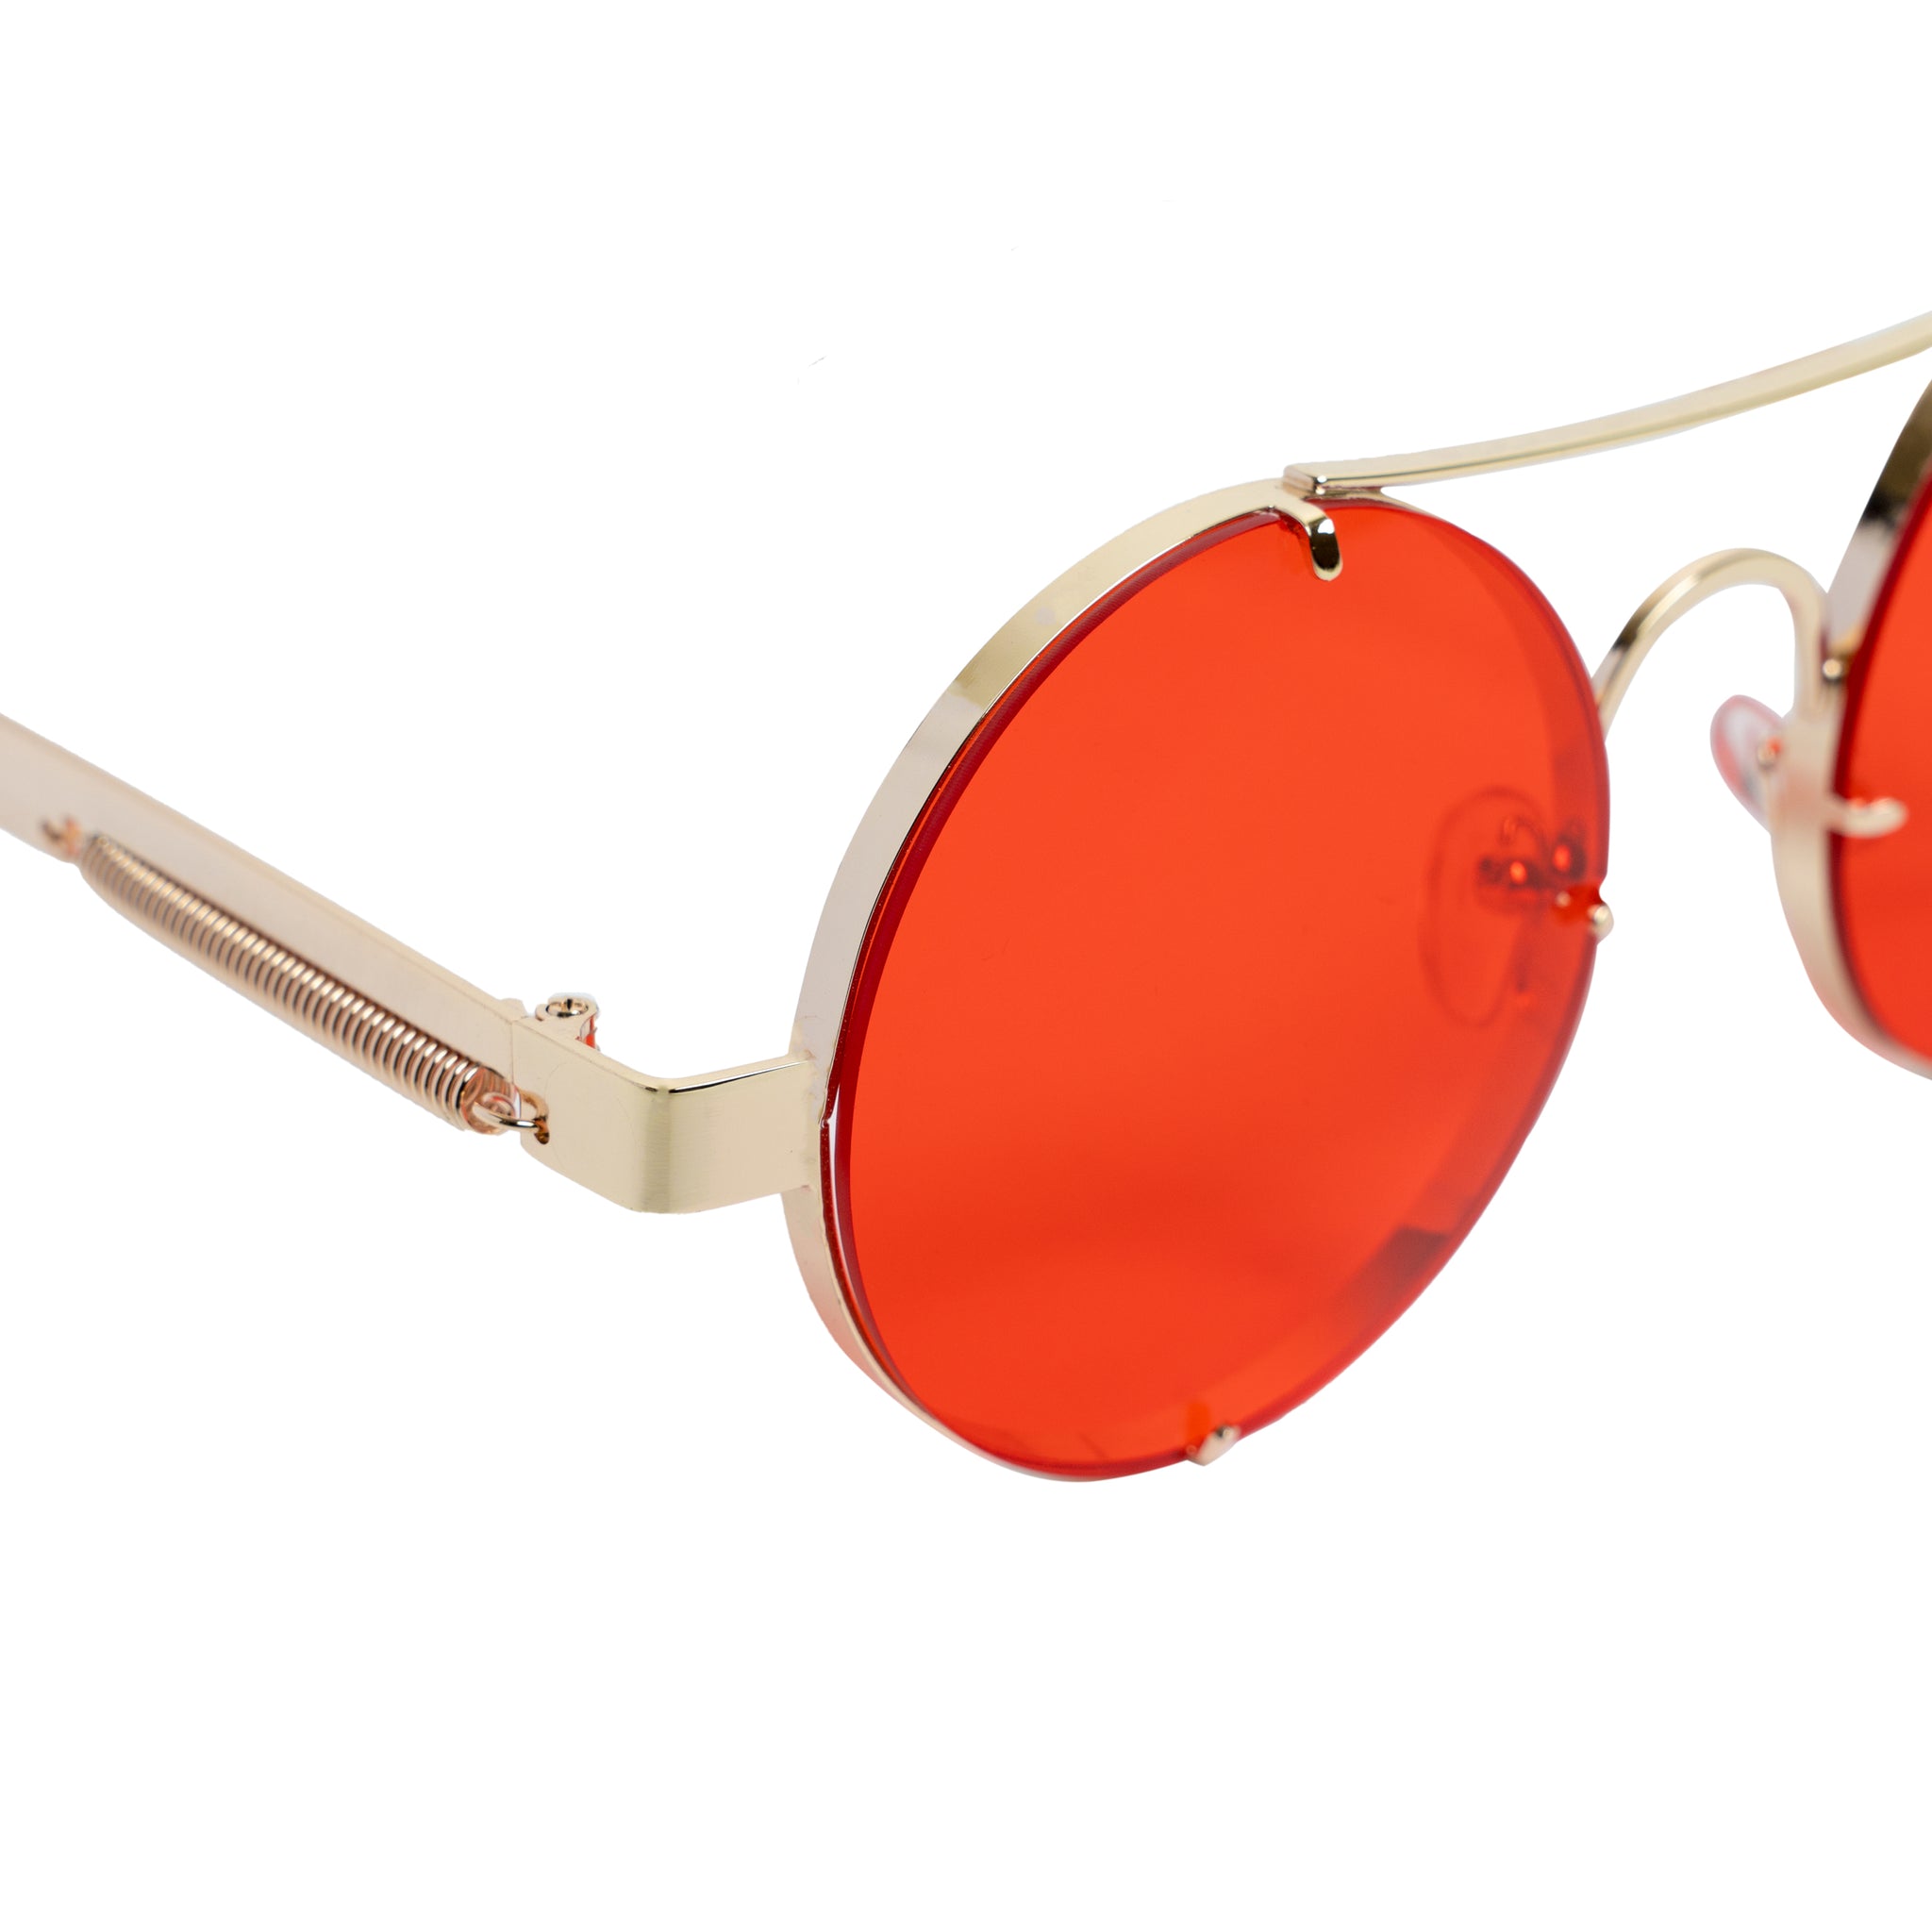 Chokore Retro Polarized Sunglasses (Red & Golden)